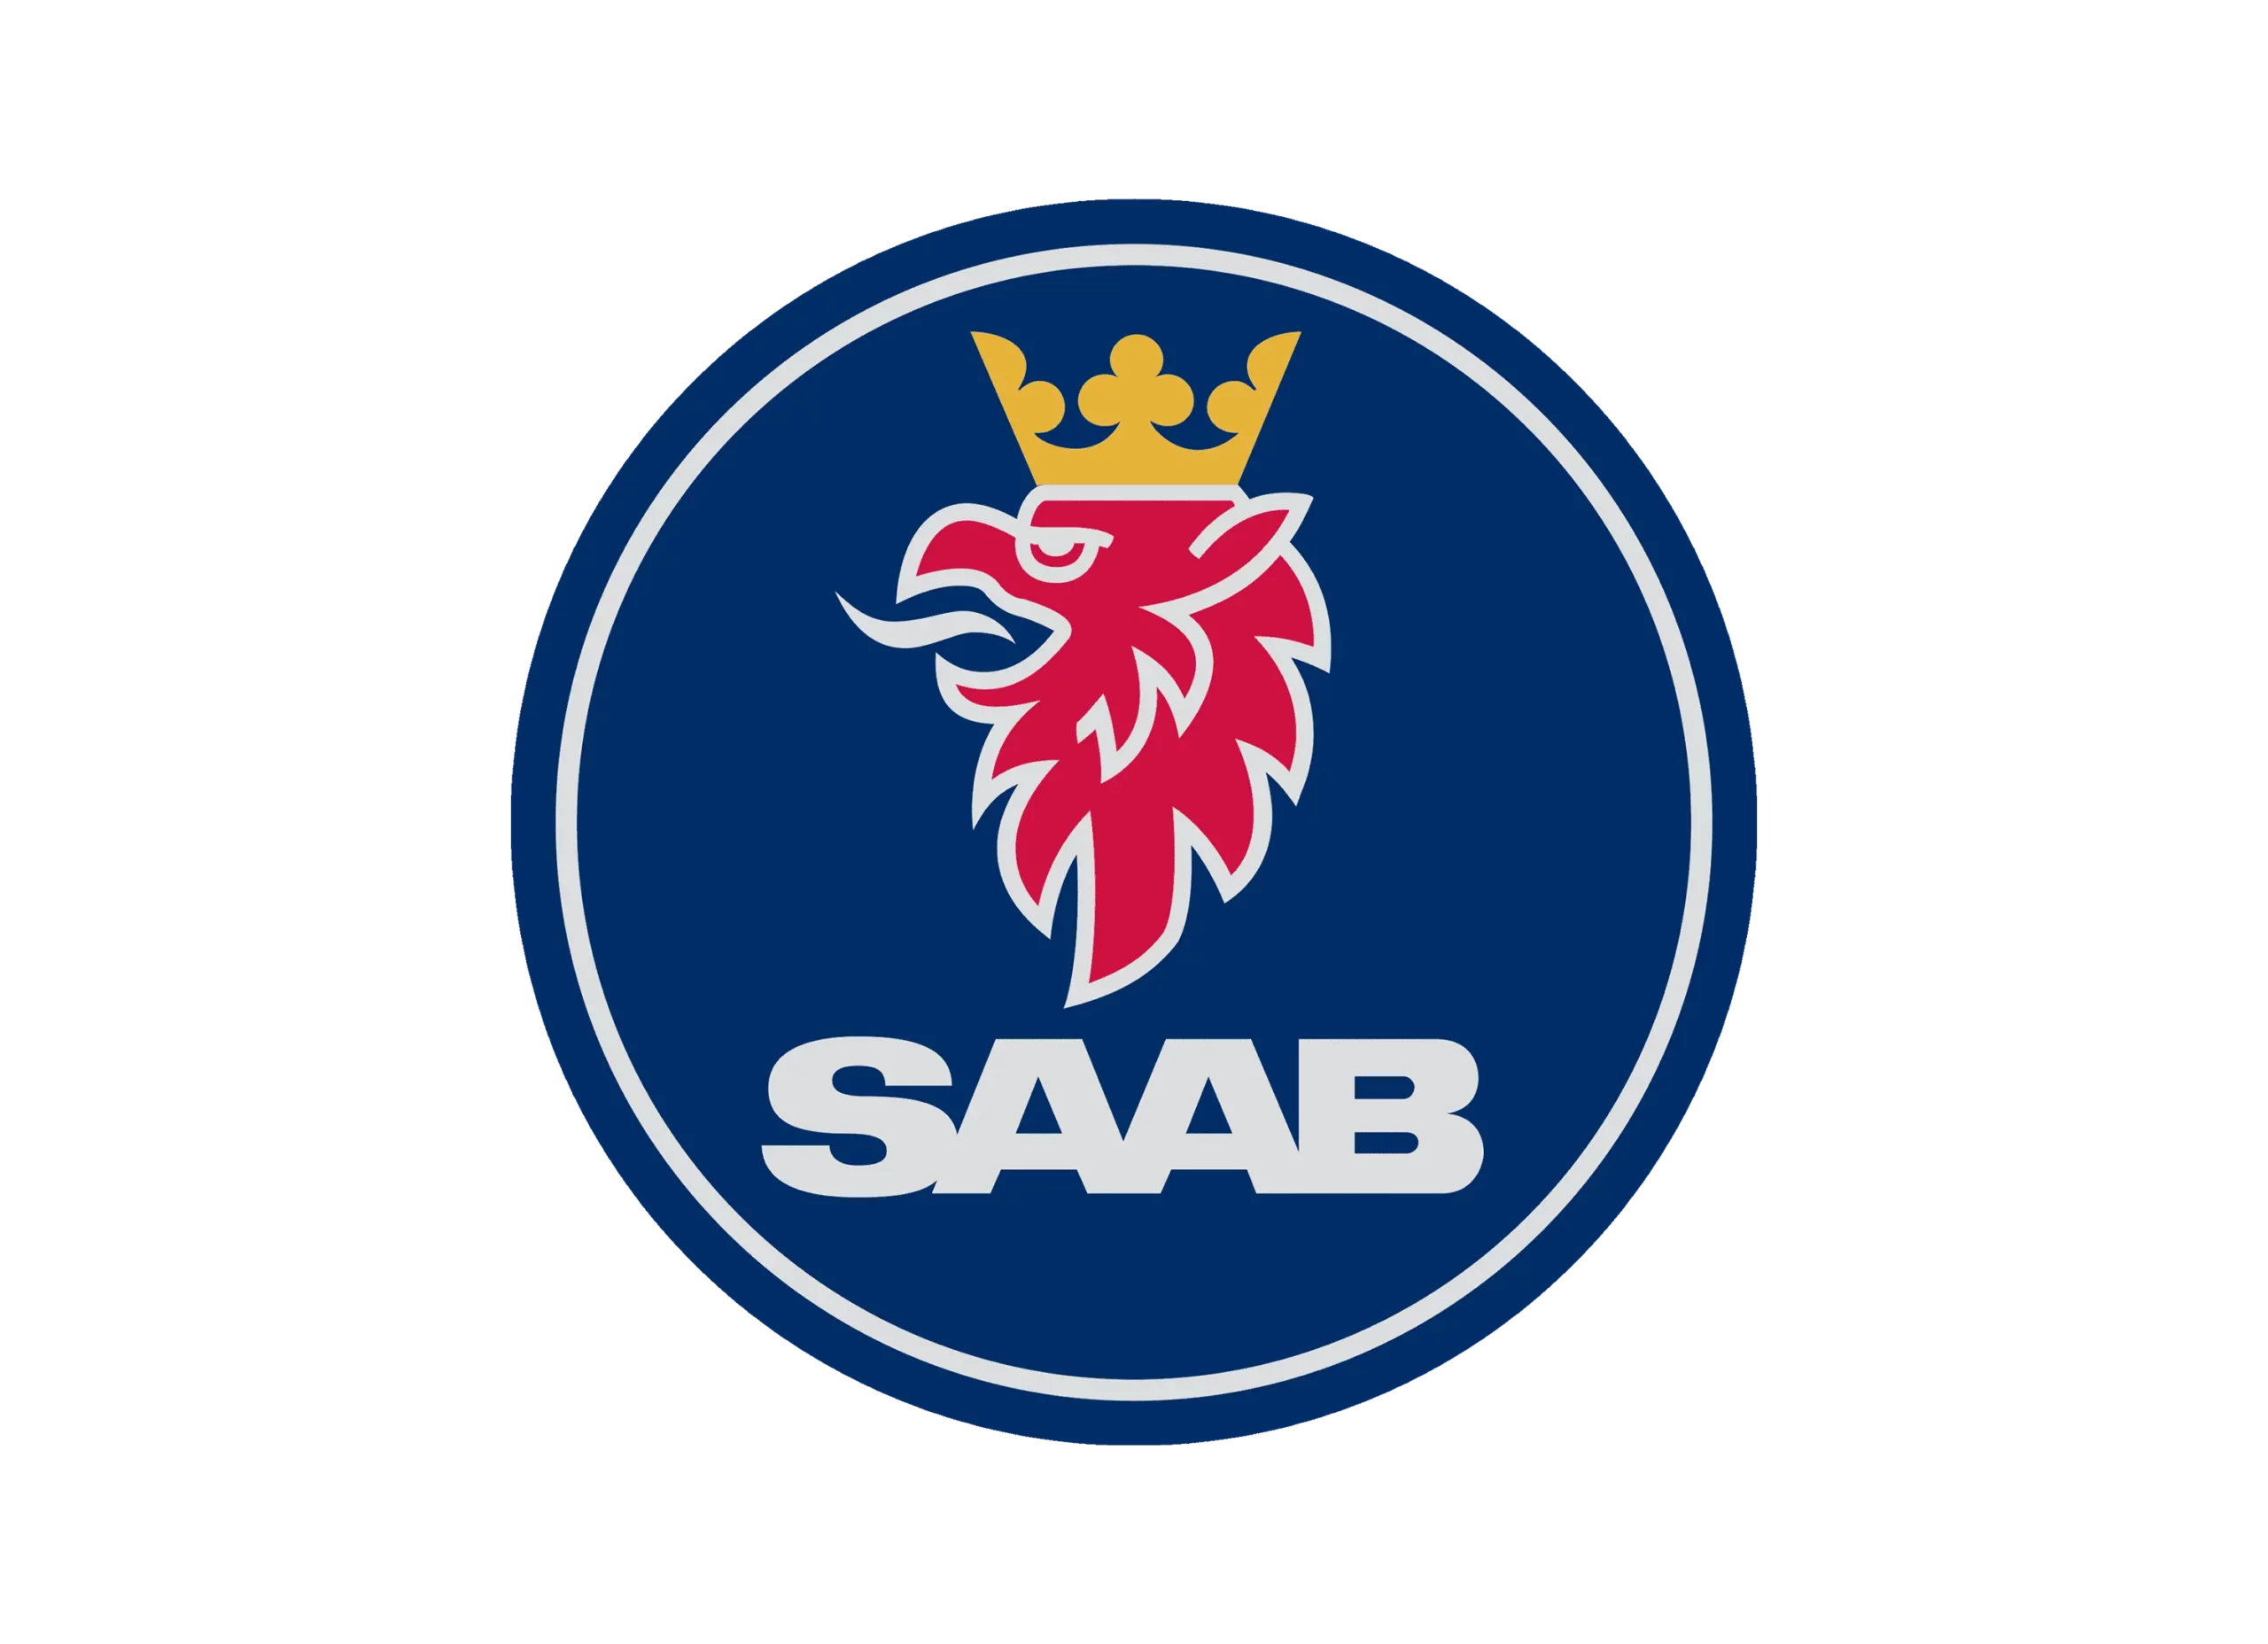 Saab logo 1995-2000